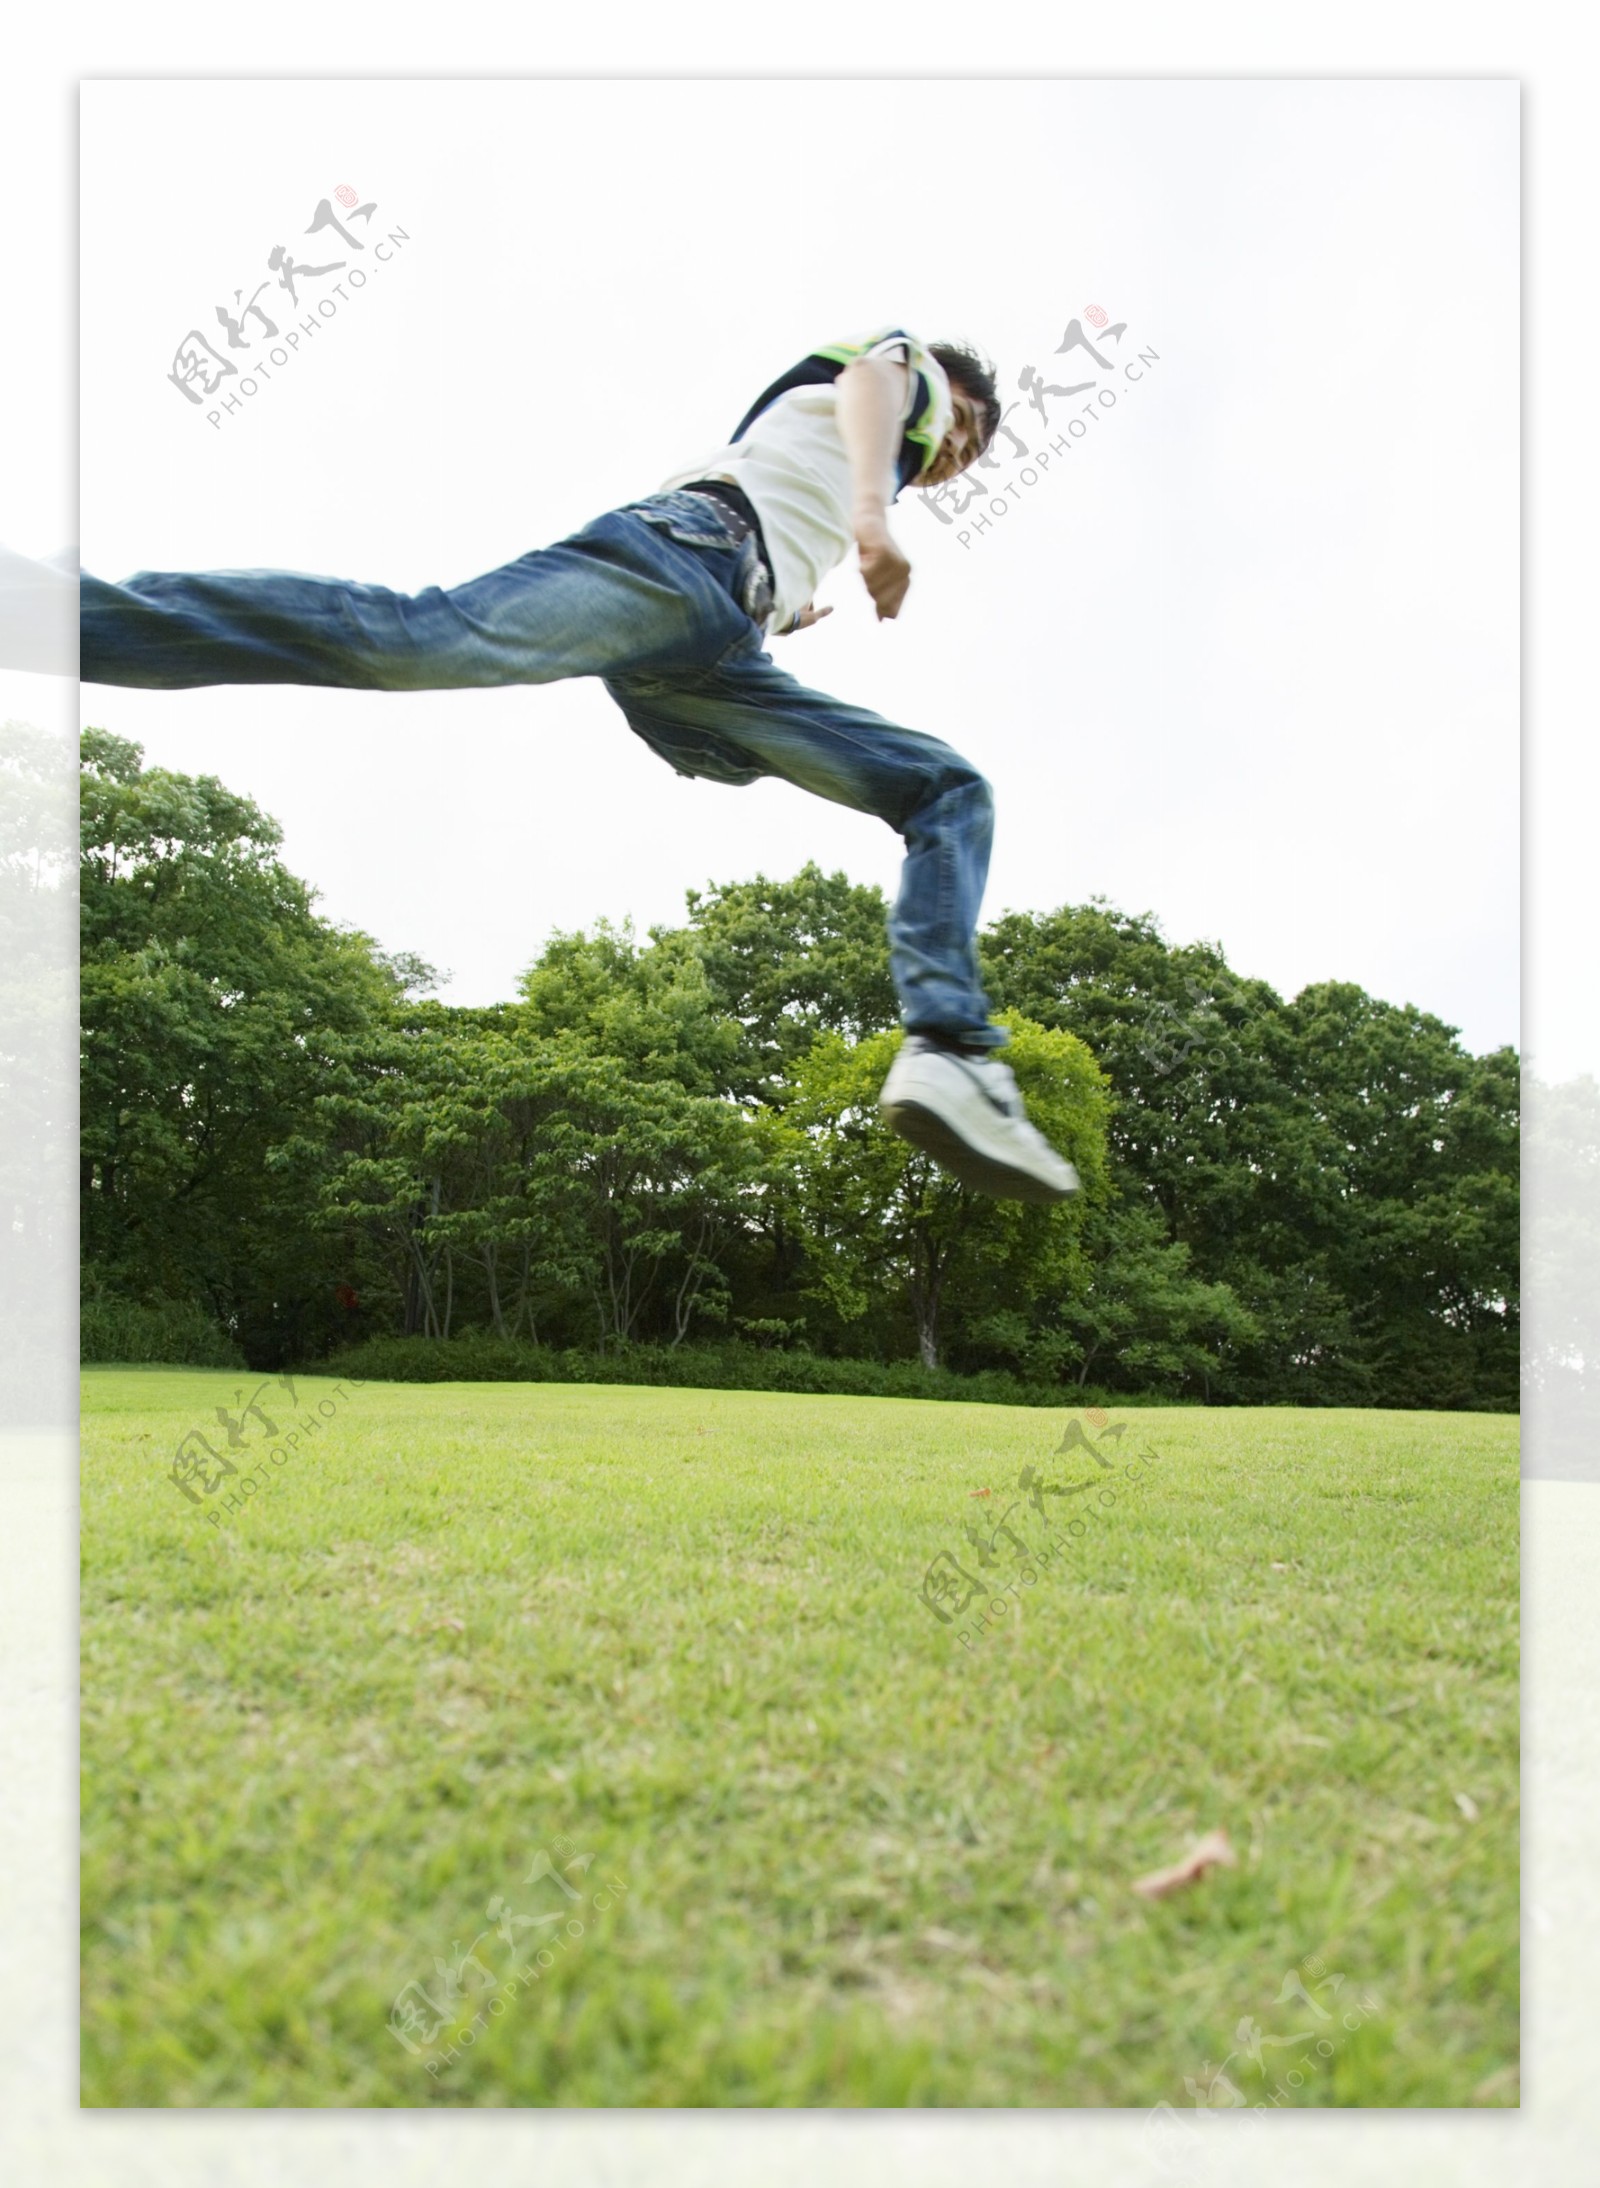 奔跑跳跃的青年男生图片